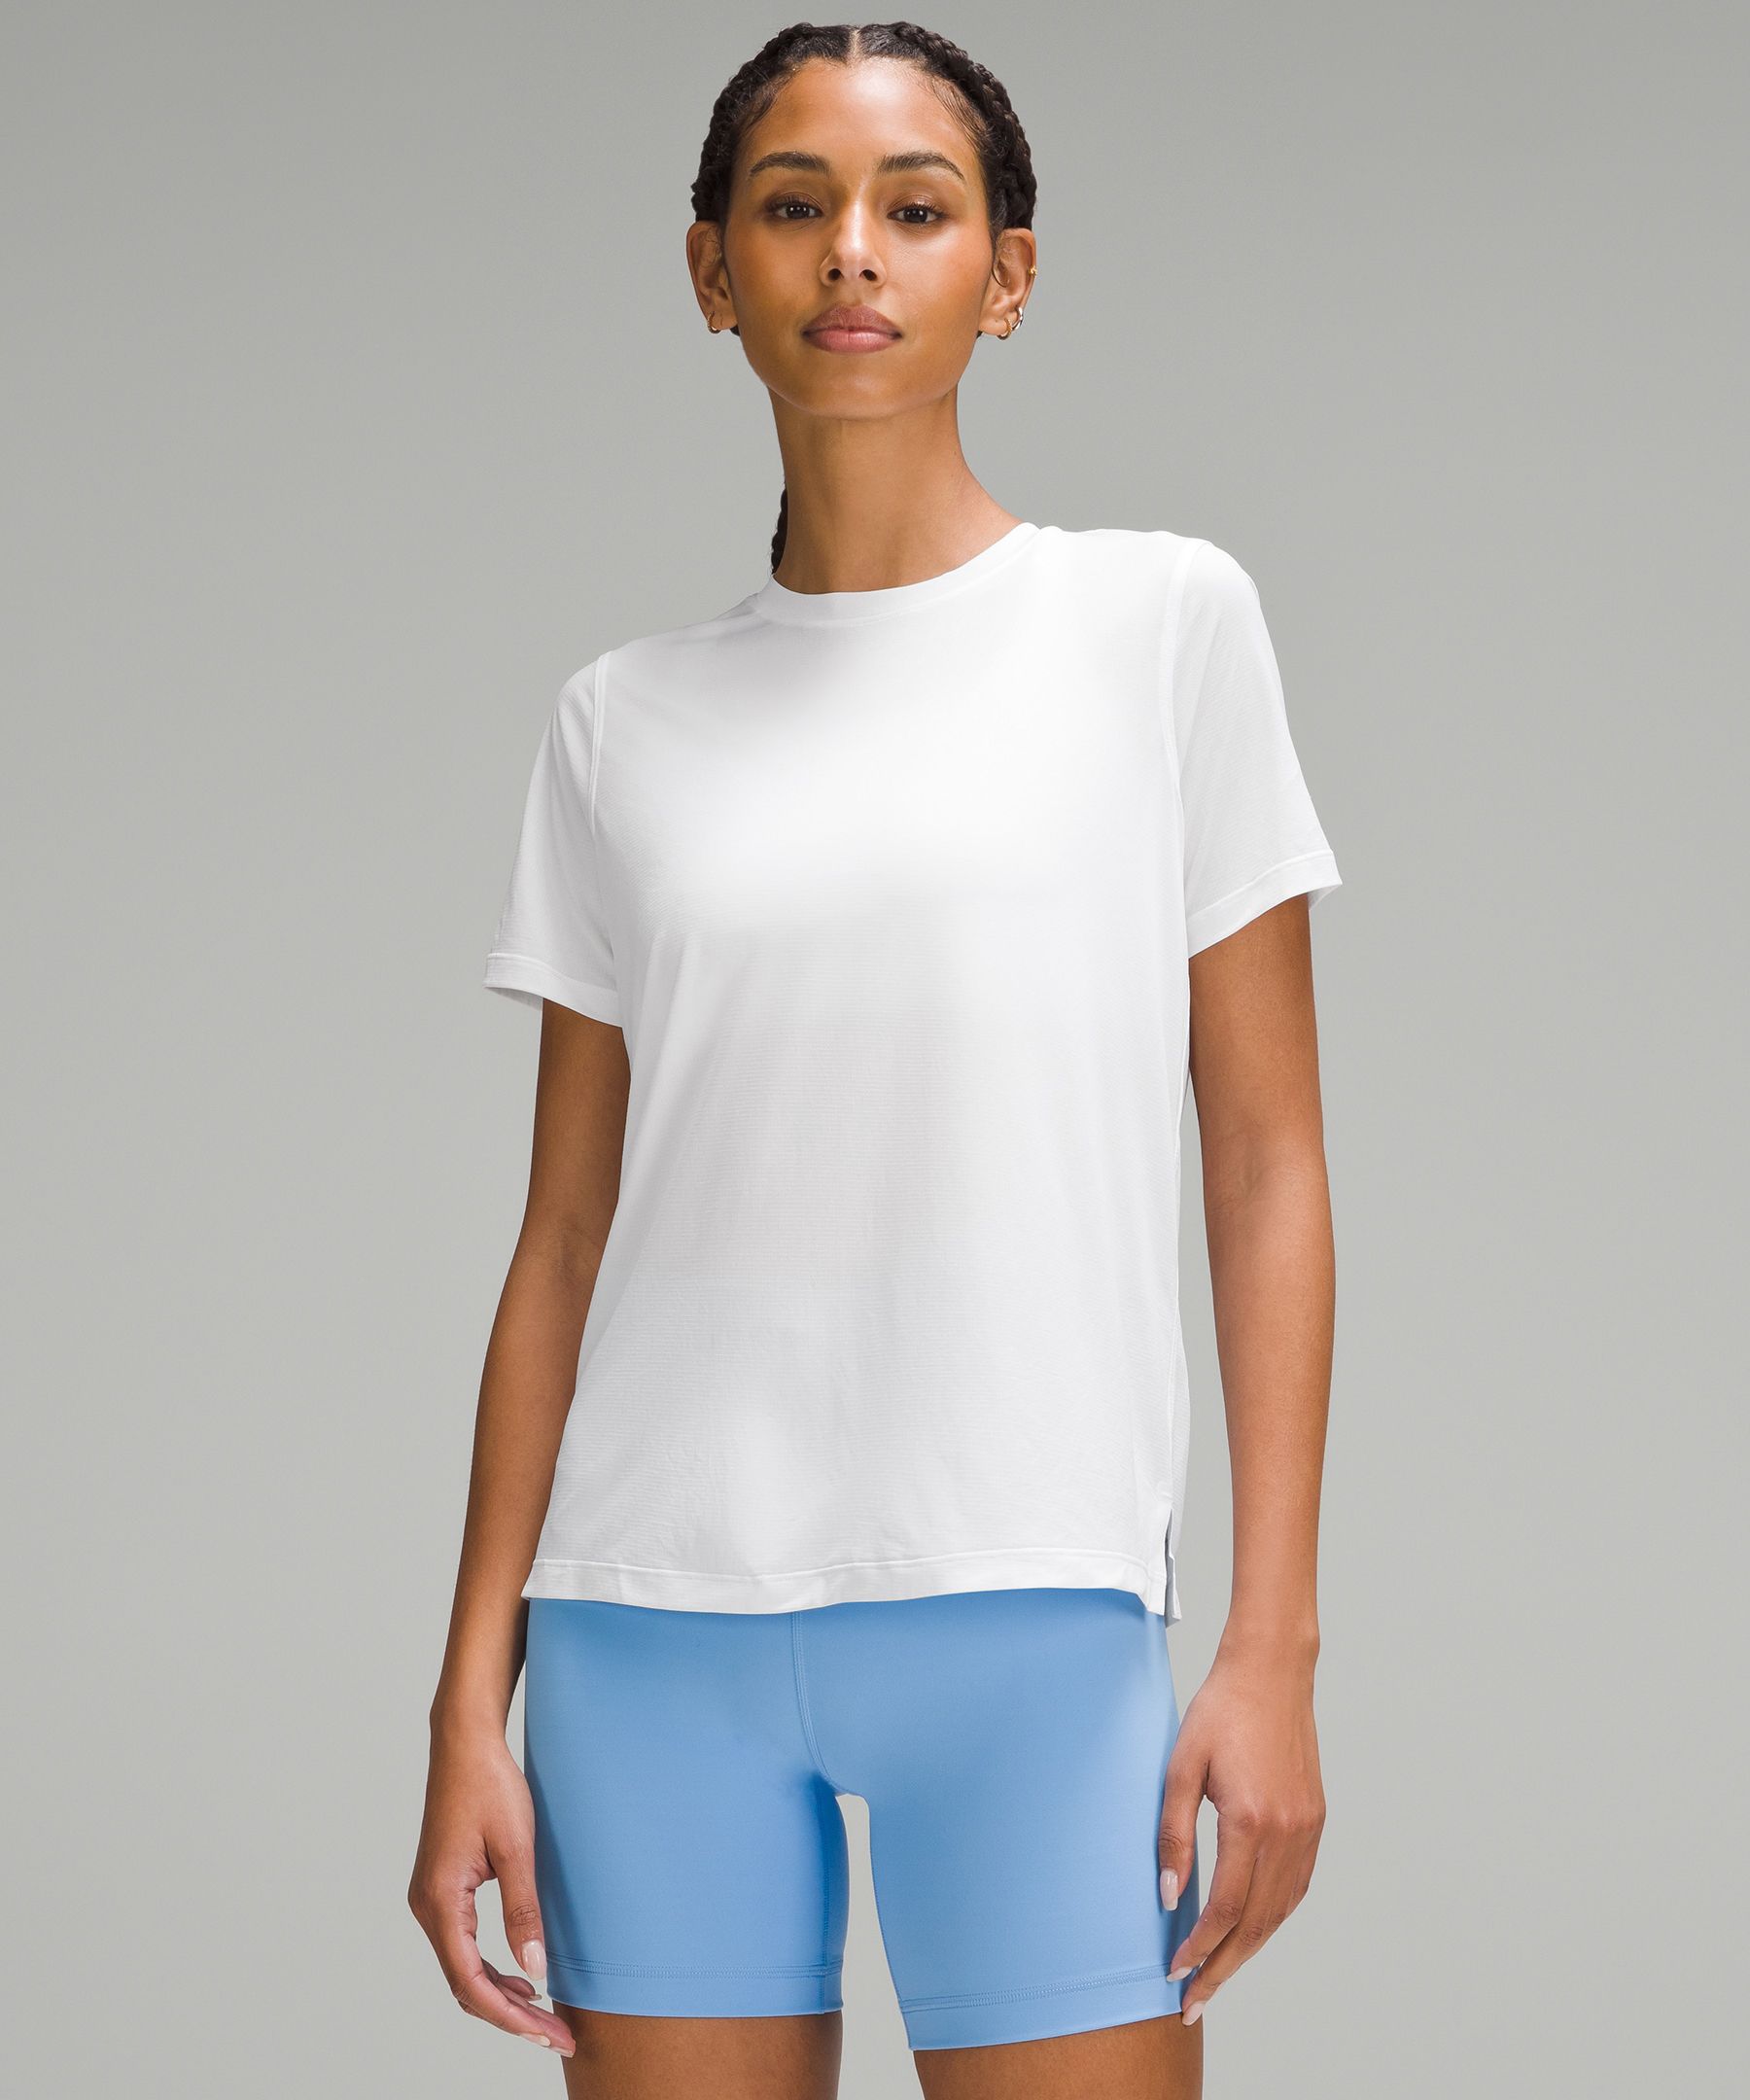 Ultralight Hip-Length T-Shirt | Women's Short Sleeve Shirts & Tee's | lululemon